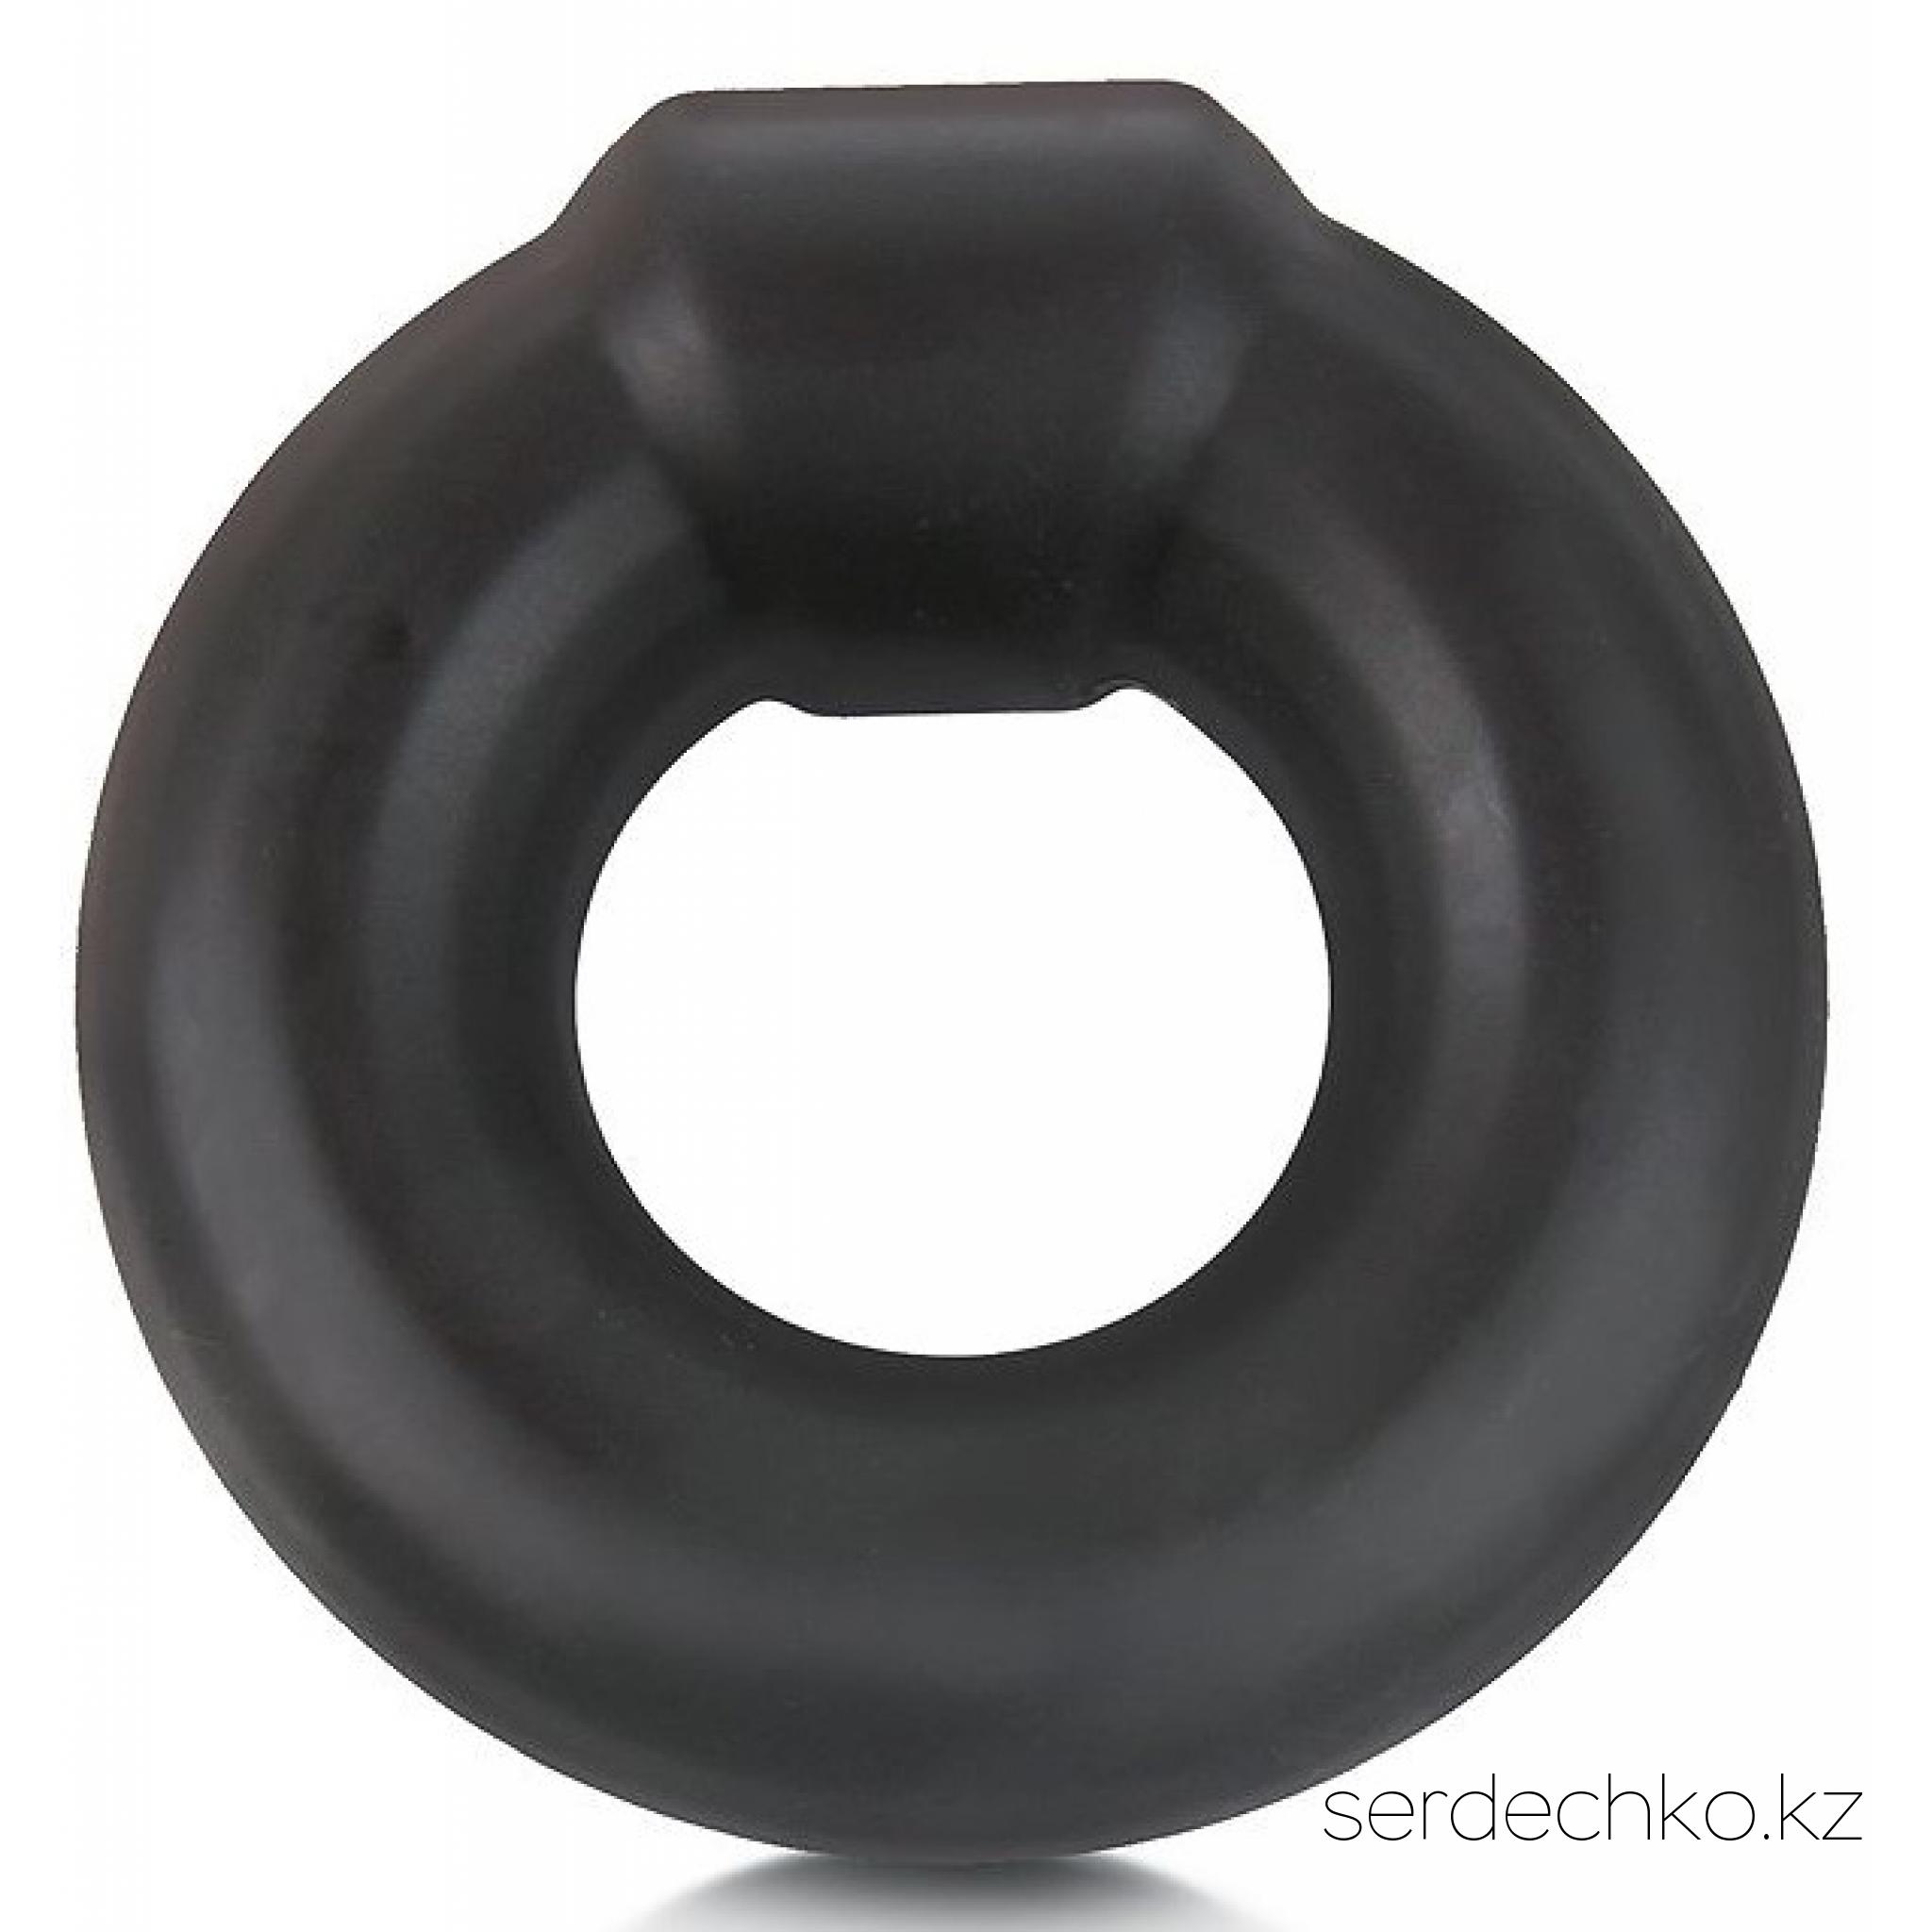 Плотное толстое силиконовое кольцо на член, цвет черный, Sex Expert, 
	Эрекционное кольцо - это один из самых популярных интимных товаров.Оно обеспечит продолжительную эрекцию и продлит интимную близость. Материал: Силикон. Цвет: Черный. Производитель: Sex Expert.
